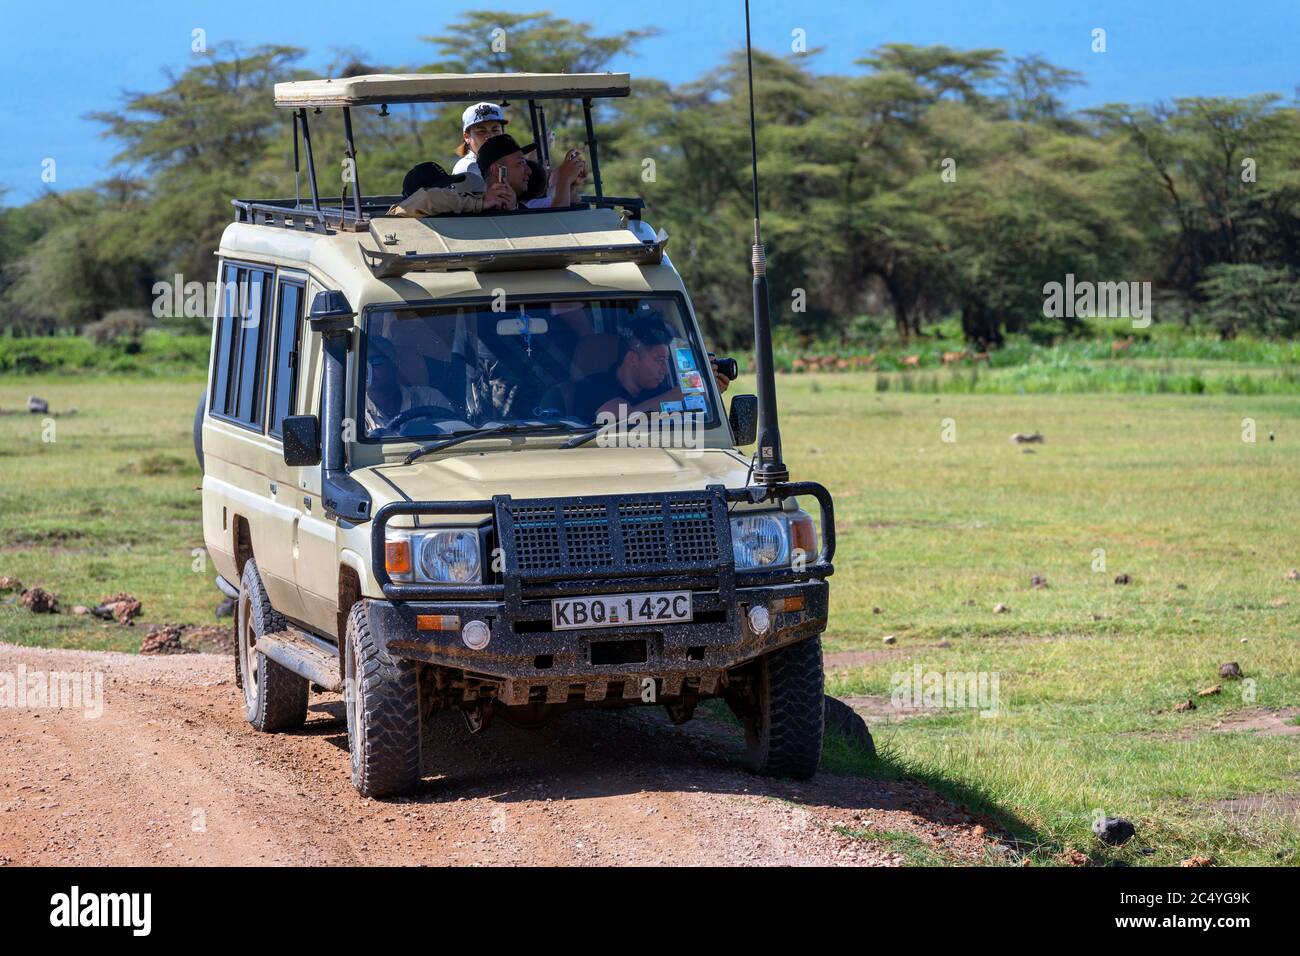 Turistas en un vehículo Toyota safari de fauna salvaje en una impulsión de juego, Parque Nacional Amboseli, Kenya, África Foto de stock